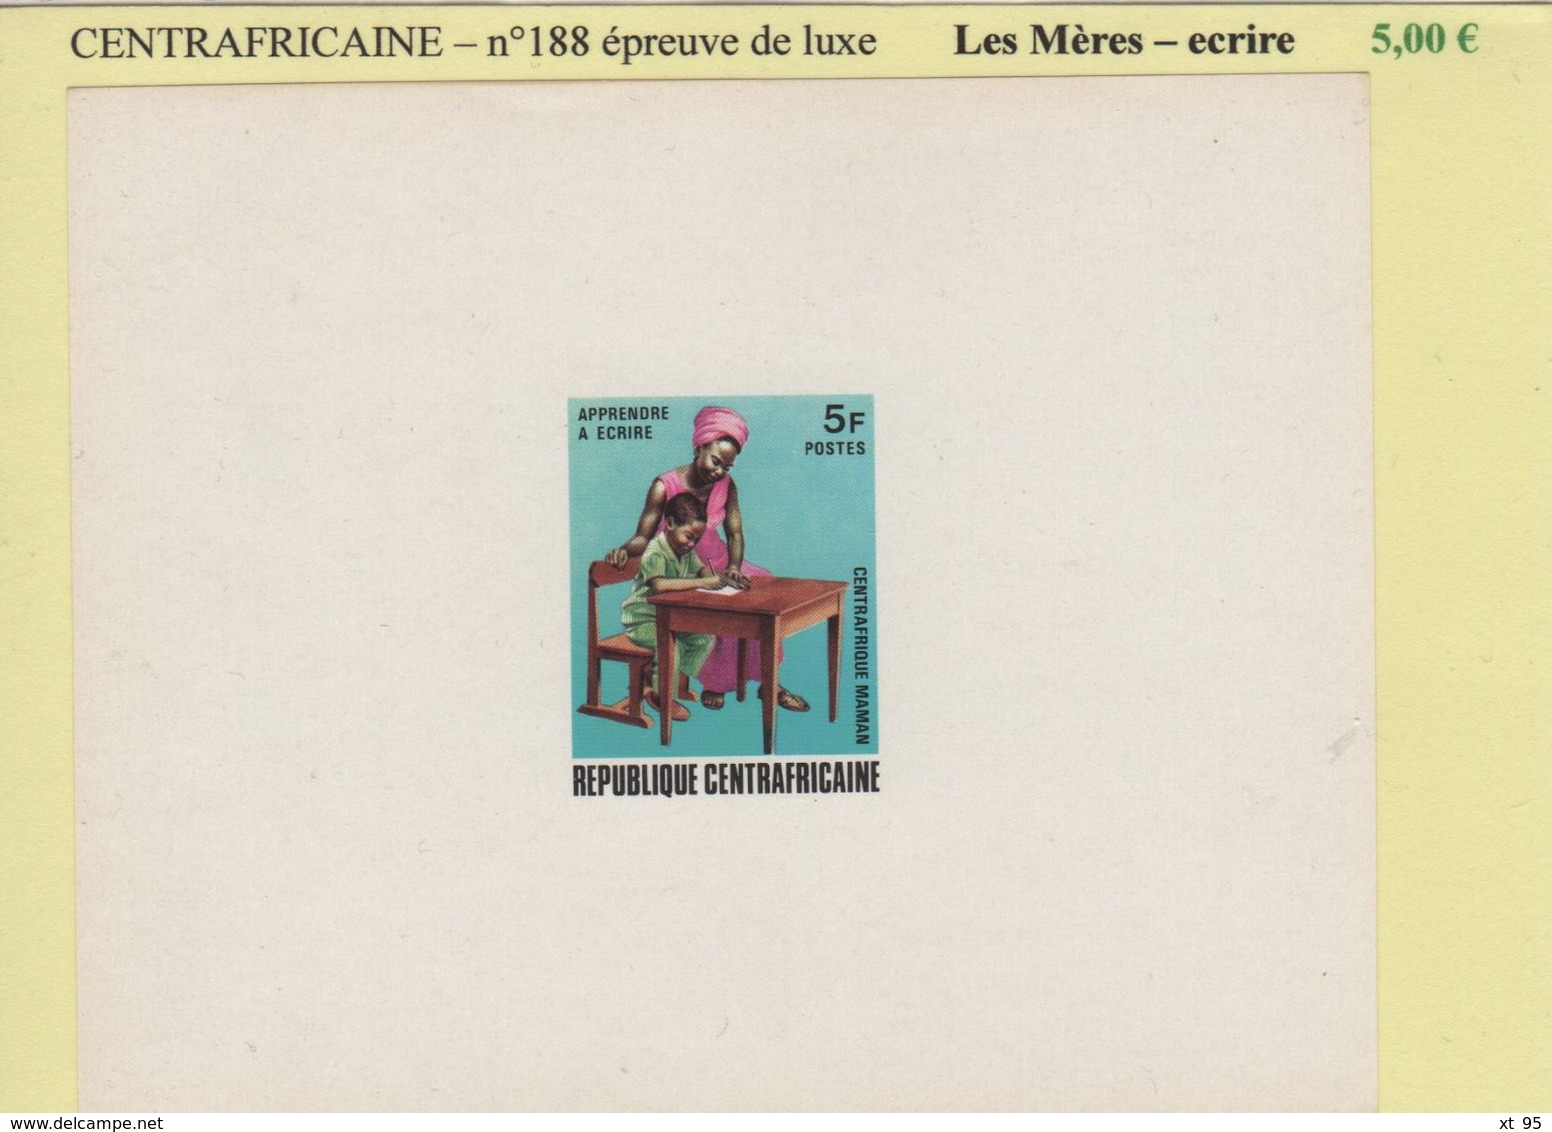 Centrafricaine - Epreuve De Luxe - N°188 - Les Meres - Ecrire - Central African Republic